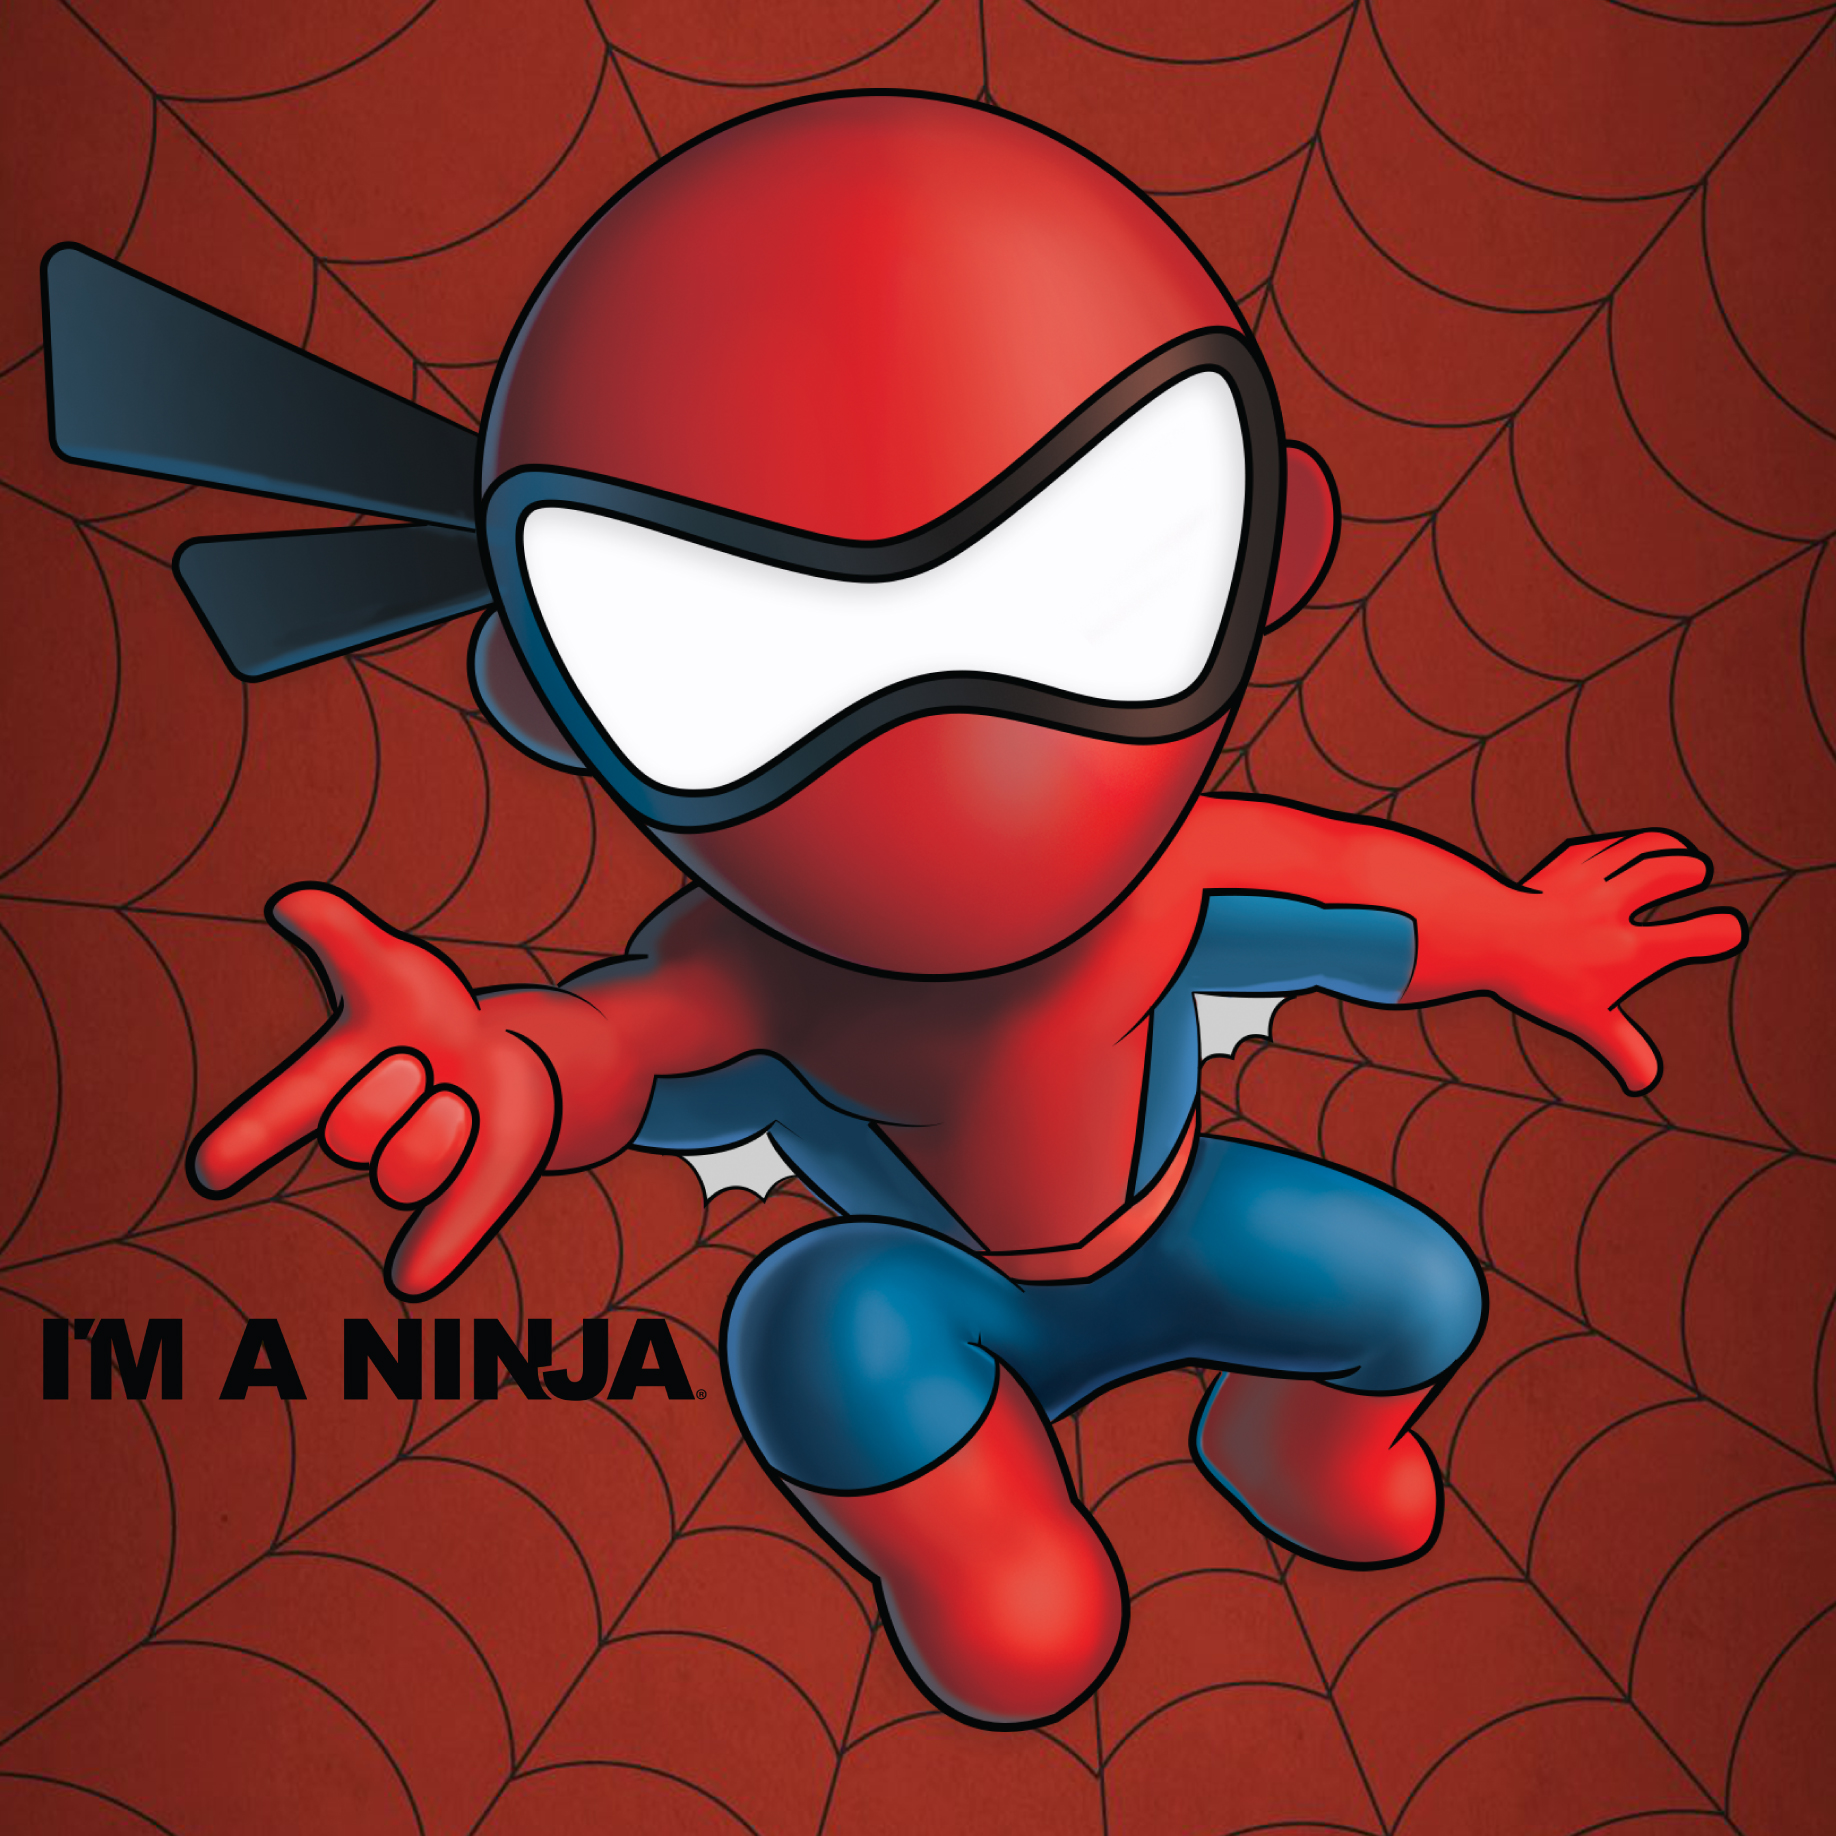 Spiderman x I'M A NINJA